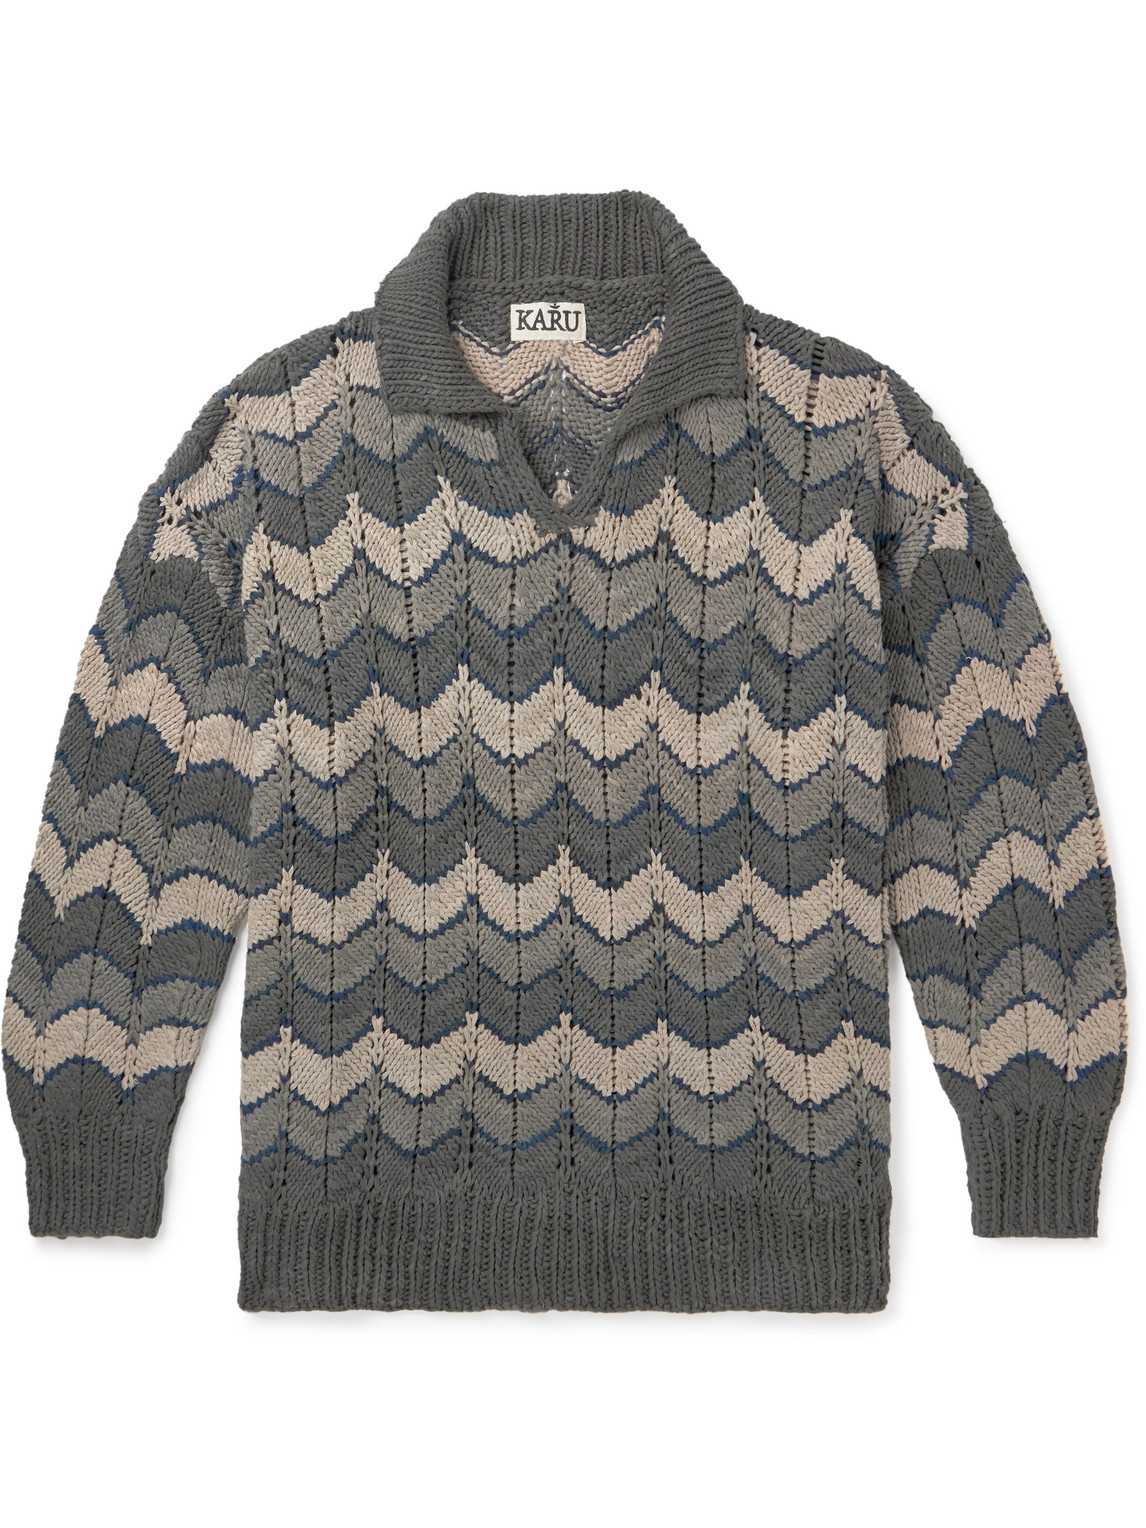 Kartik Research - Chevron Cotton Sweater - Men - Gray - M von Kartik Research